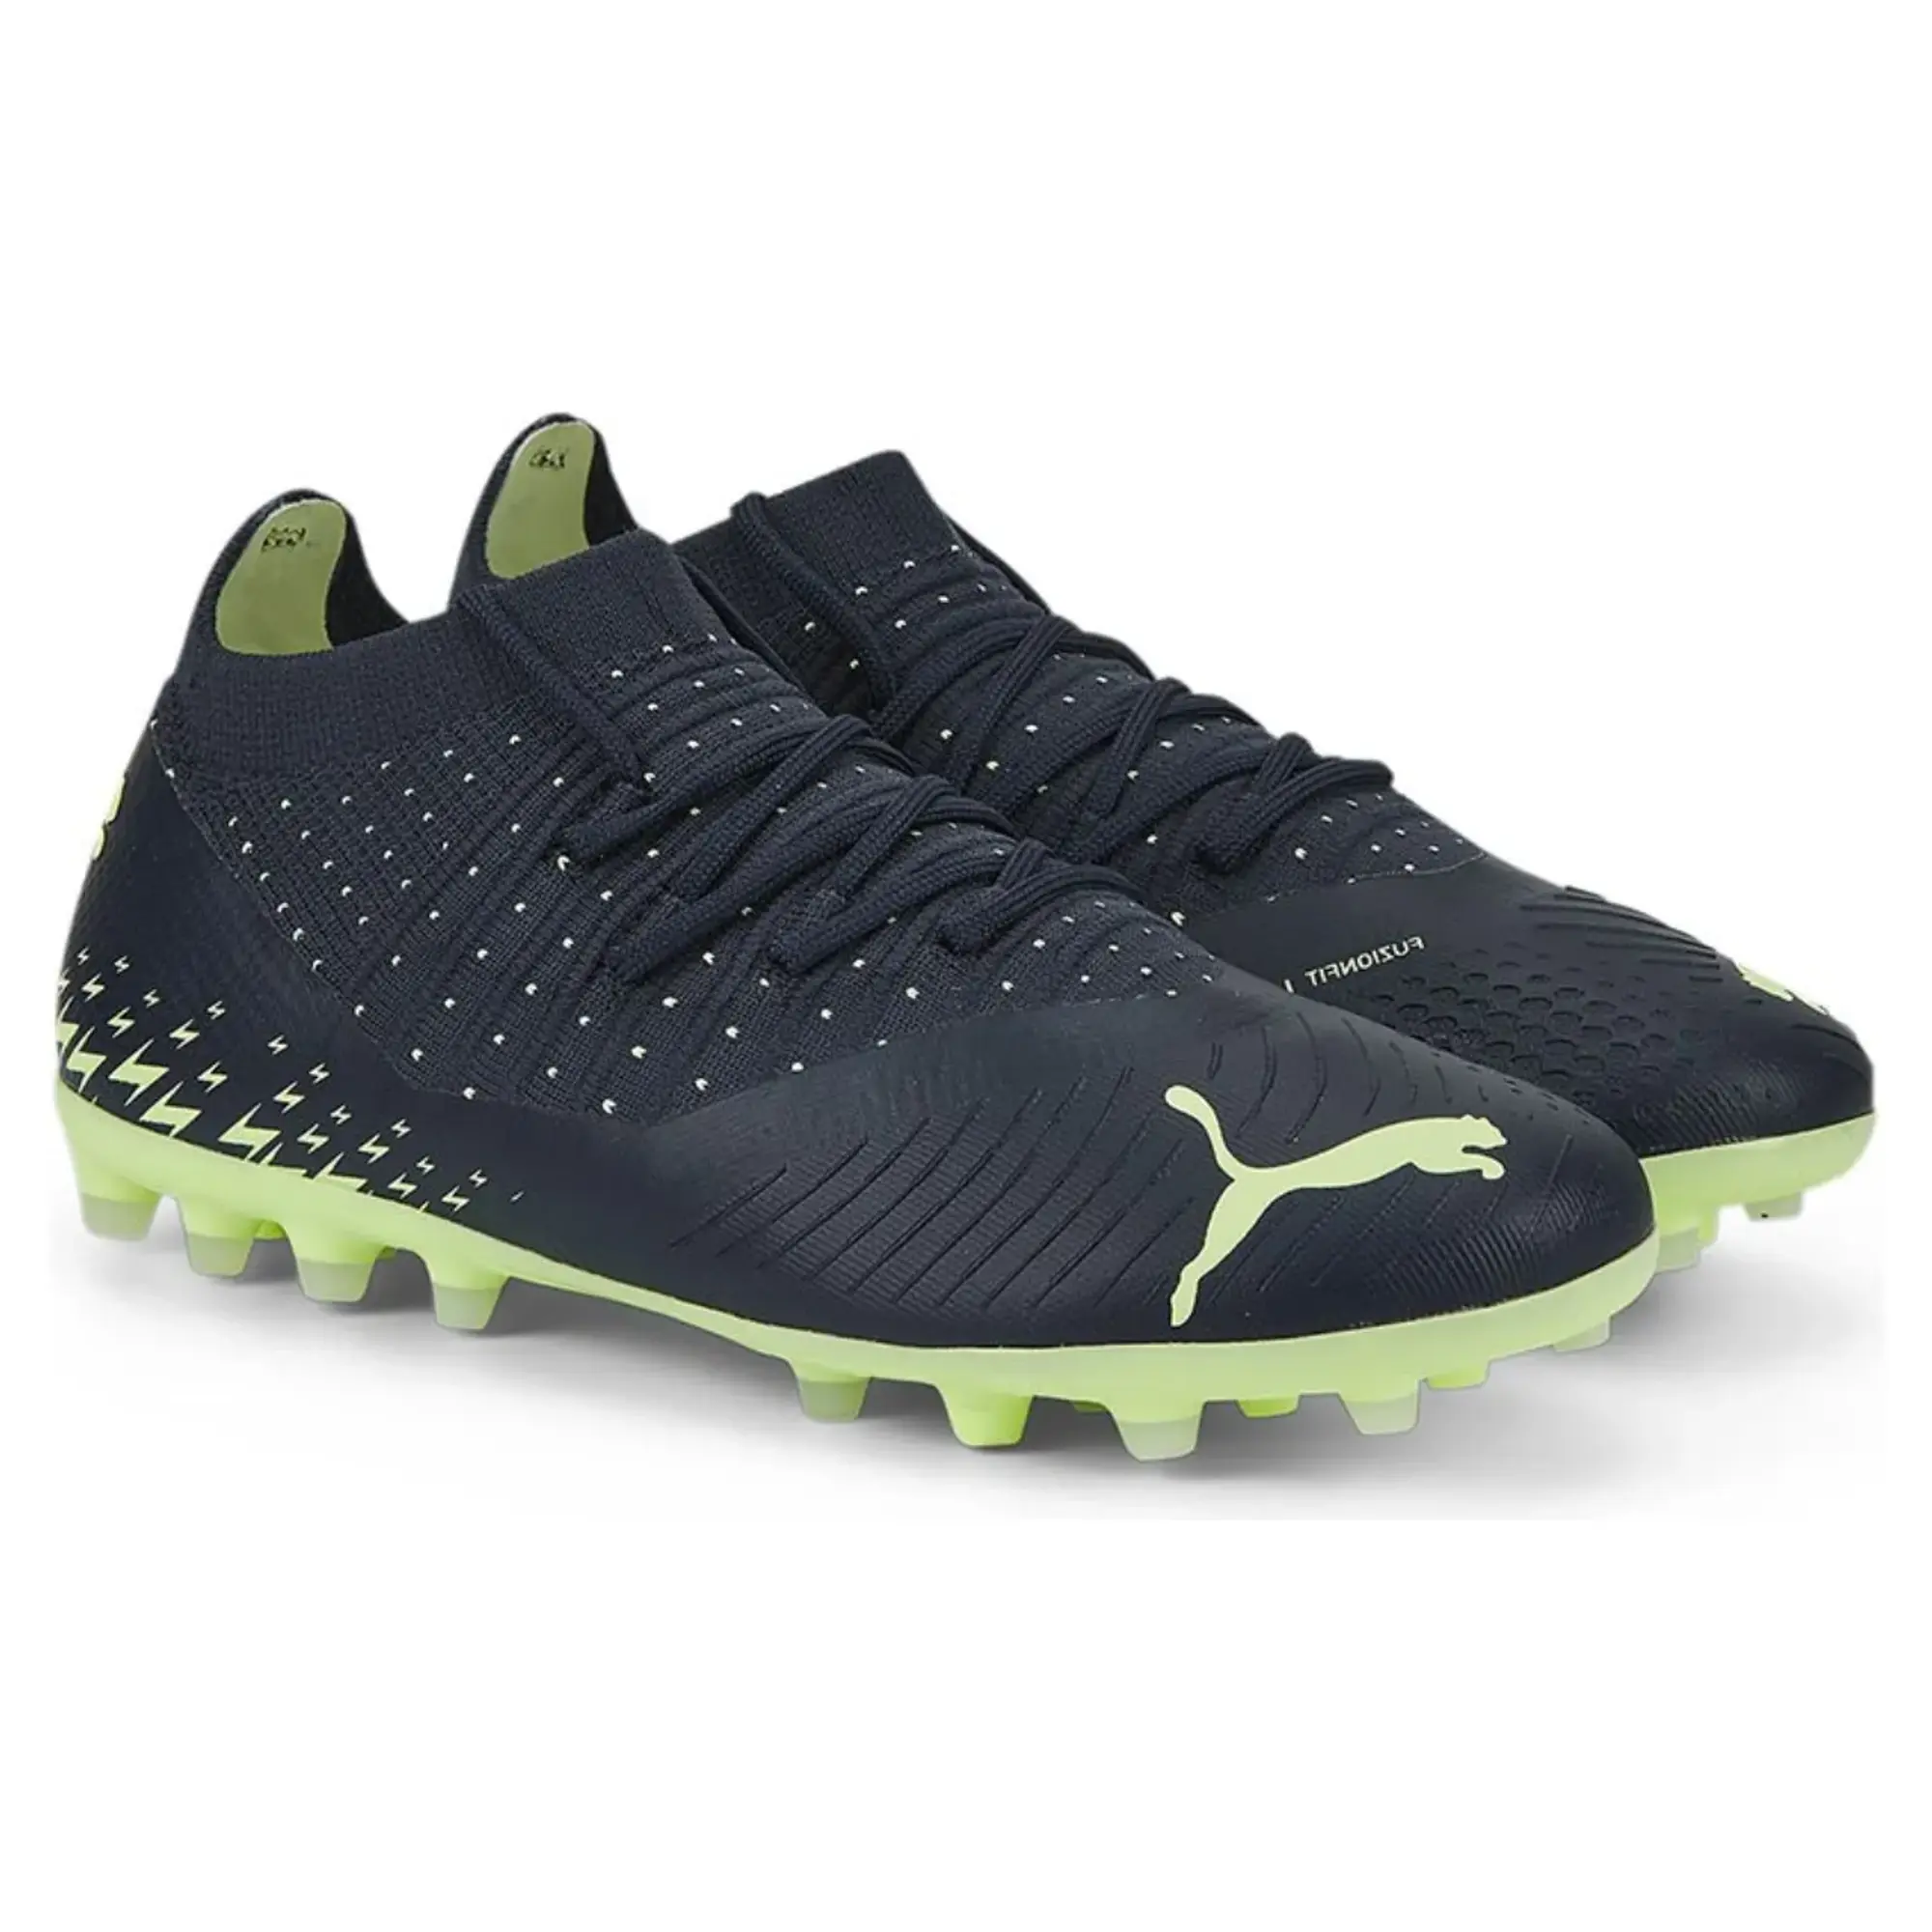 Puma Future Z 3.4 Mg Football Boots  - Black